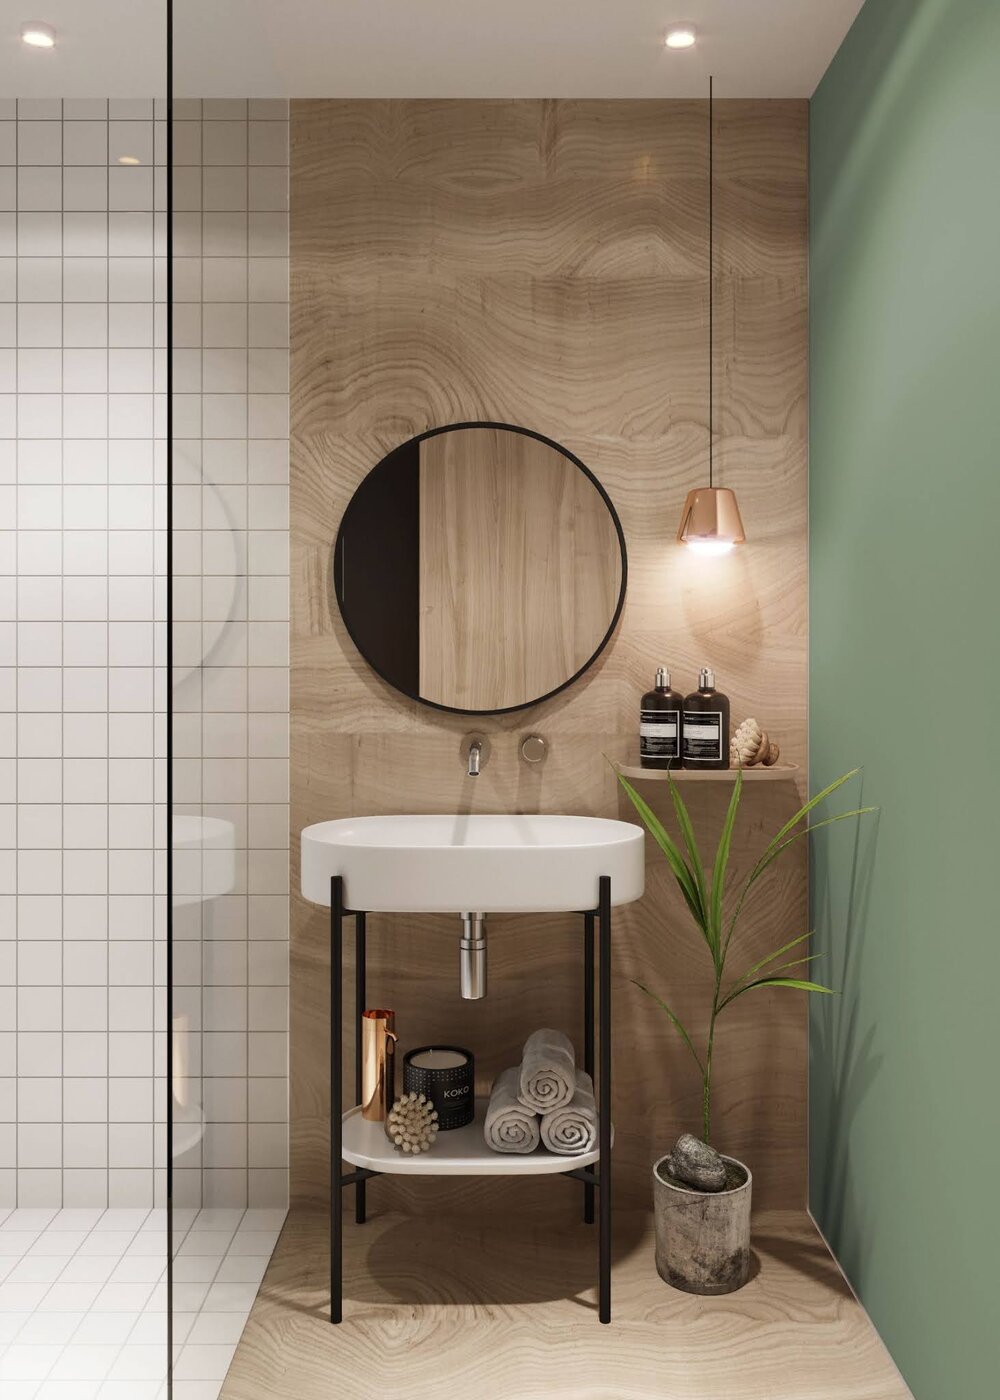 ilaria fatone inspirations - une salle de bains mixant couleurs et matériaux